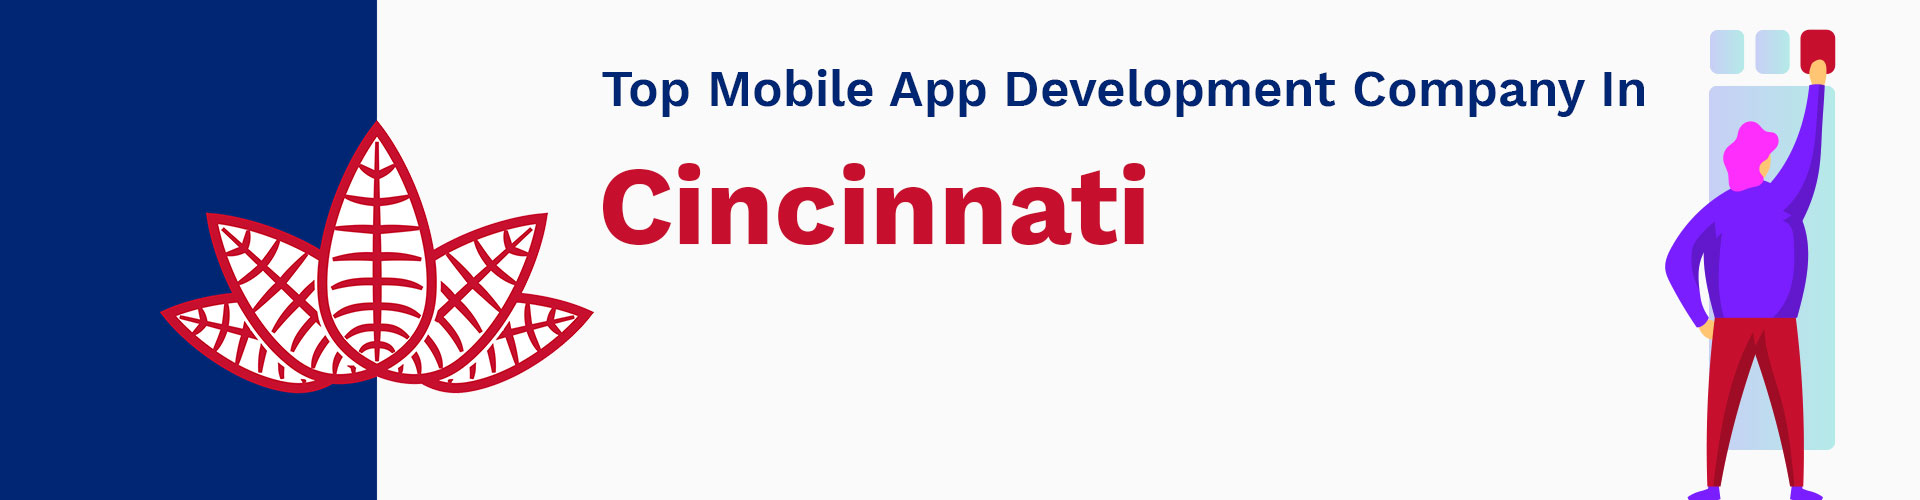 mobile app development company cincinnati